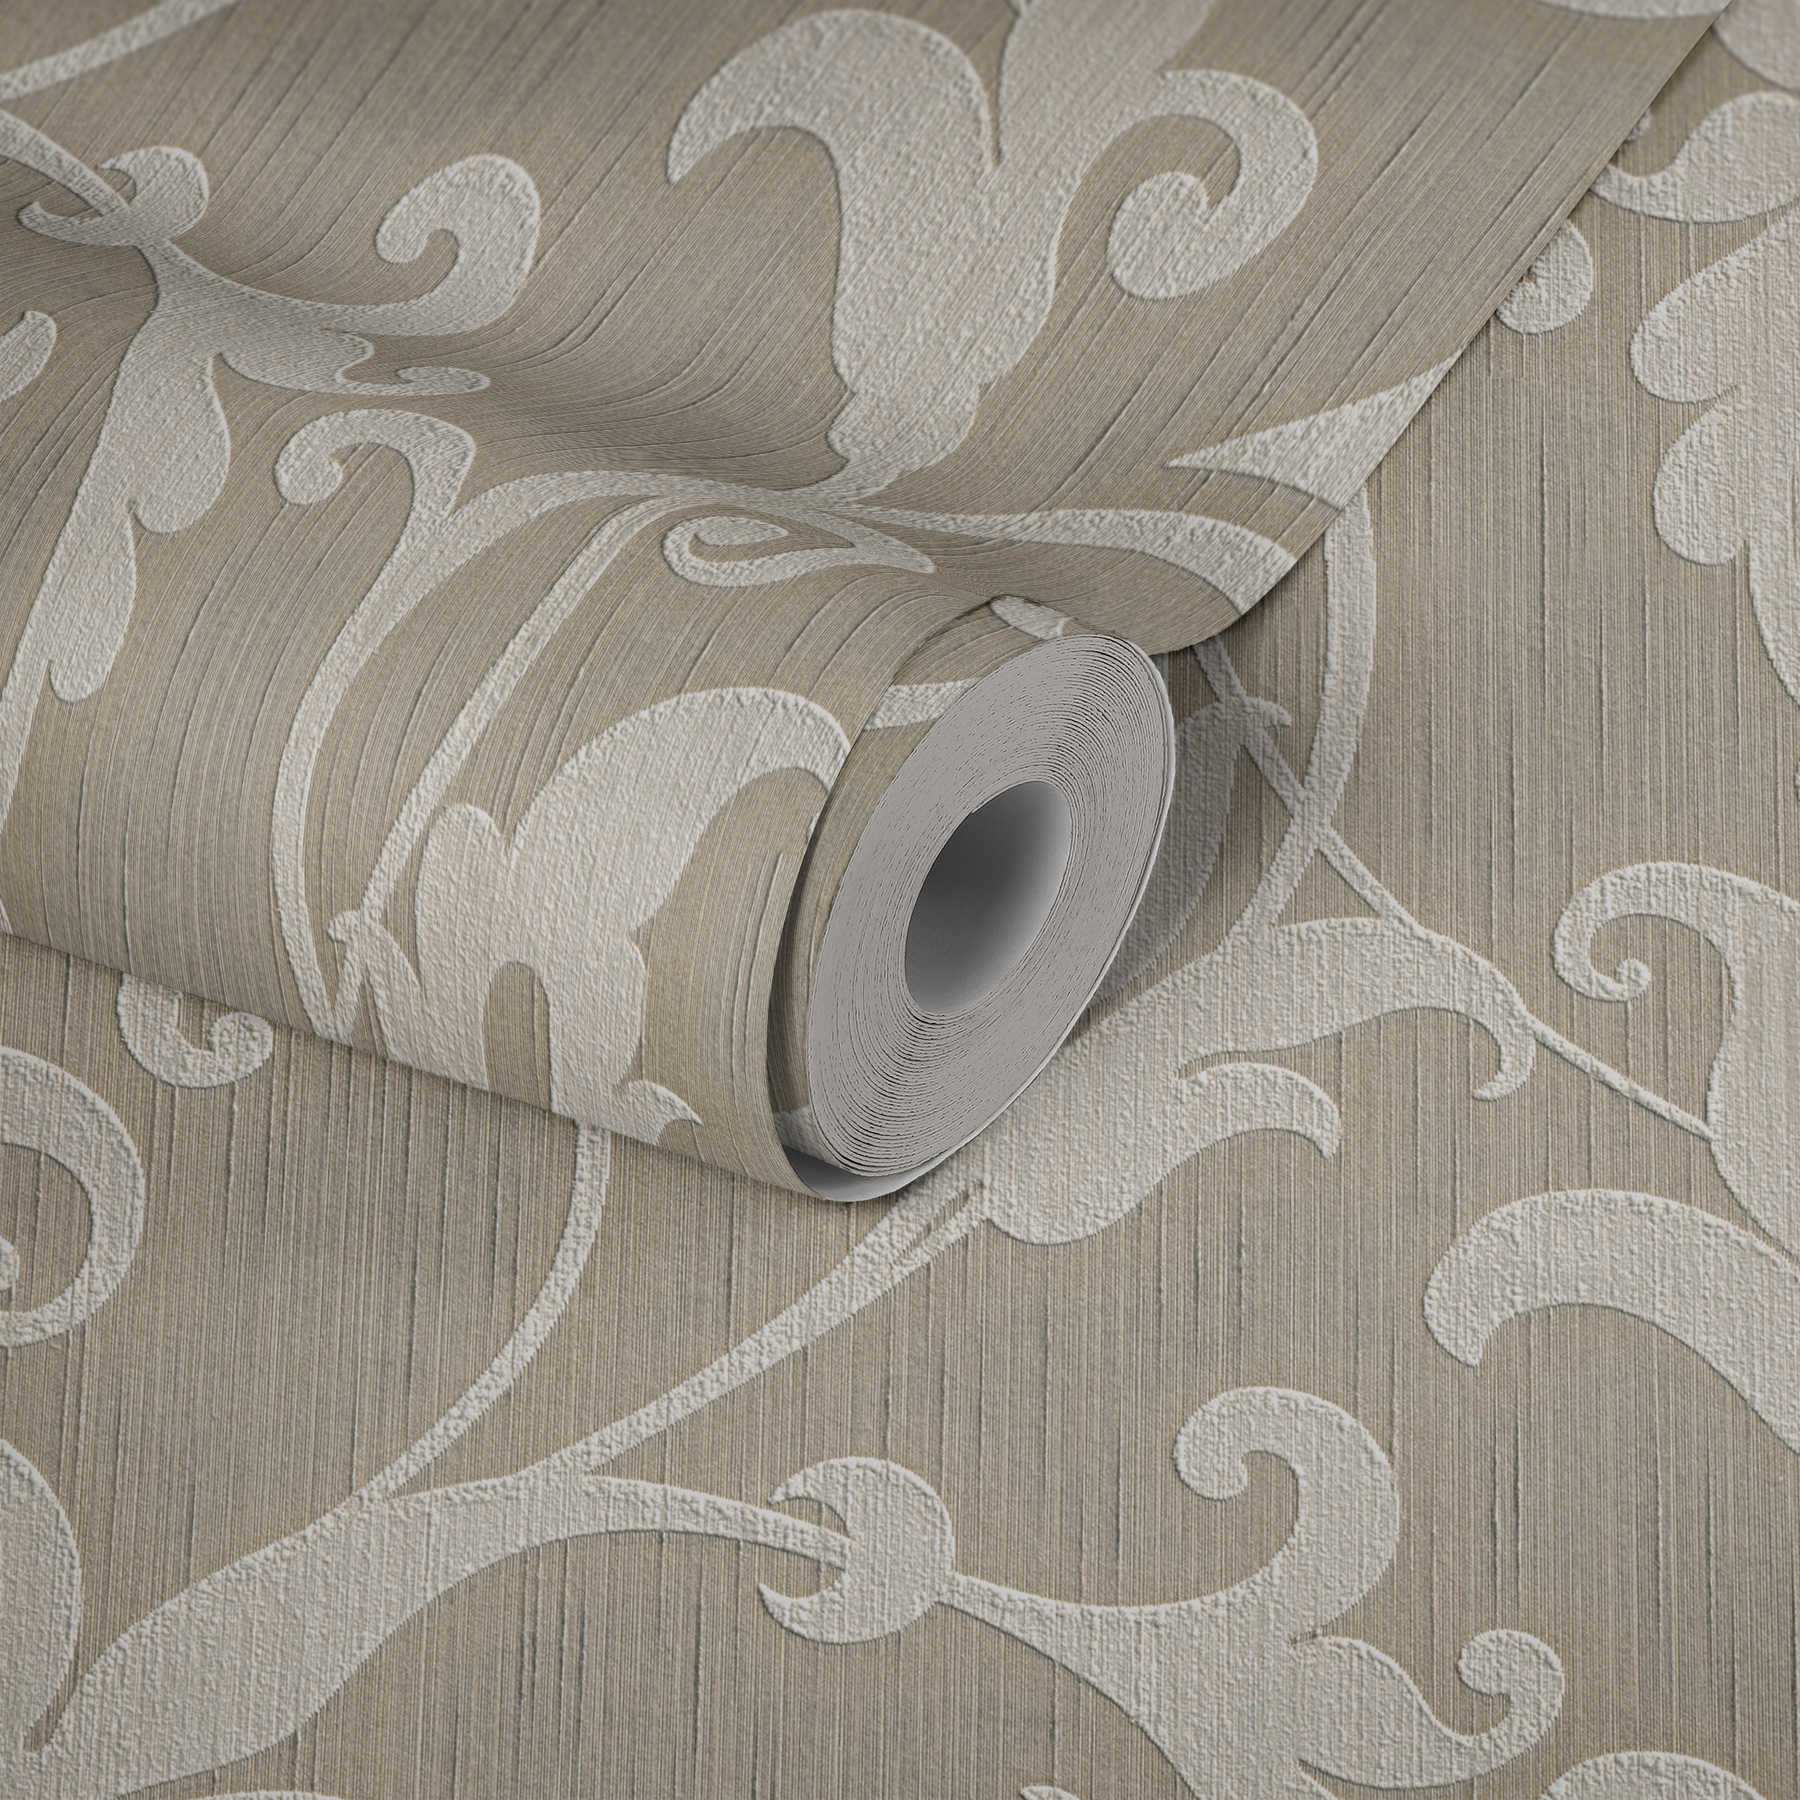             papier peint en papier textile avec ornements en relief - beige, argenté
        